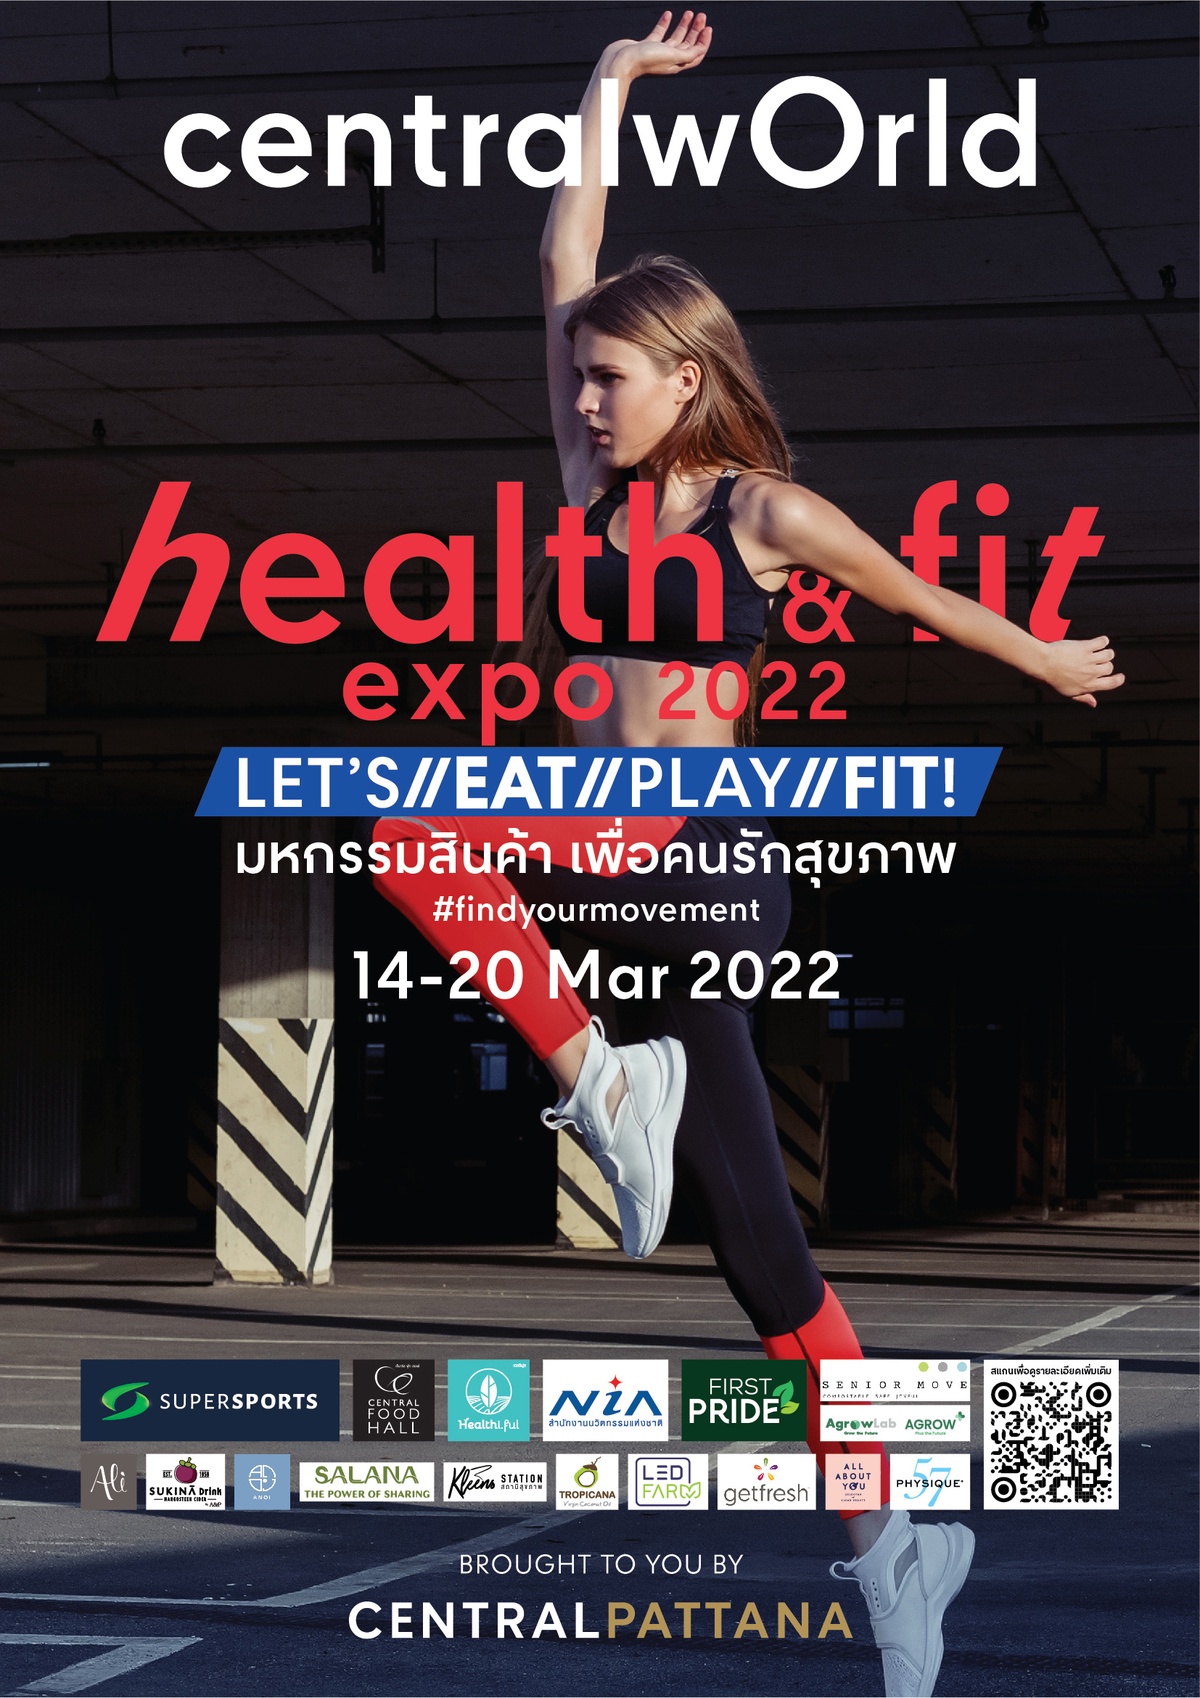 ฟิตกันให้สุด อัพเดทชีวิตสุดเฮลตี้ ในงาน Health Fit Expo 2022 ที่เดียวตอบทุกไลฟ์สไตล์ Eat Play Fit เริ่มแล้ววันนี้ ถึง 20 มี.ค. 65